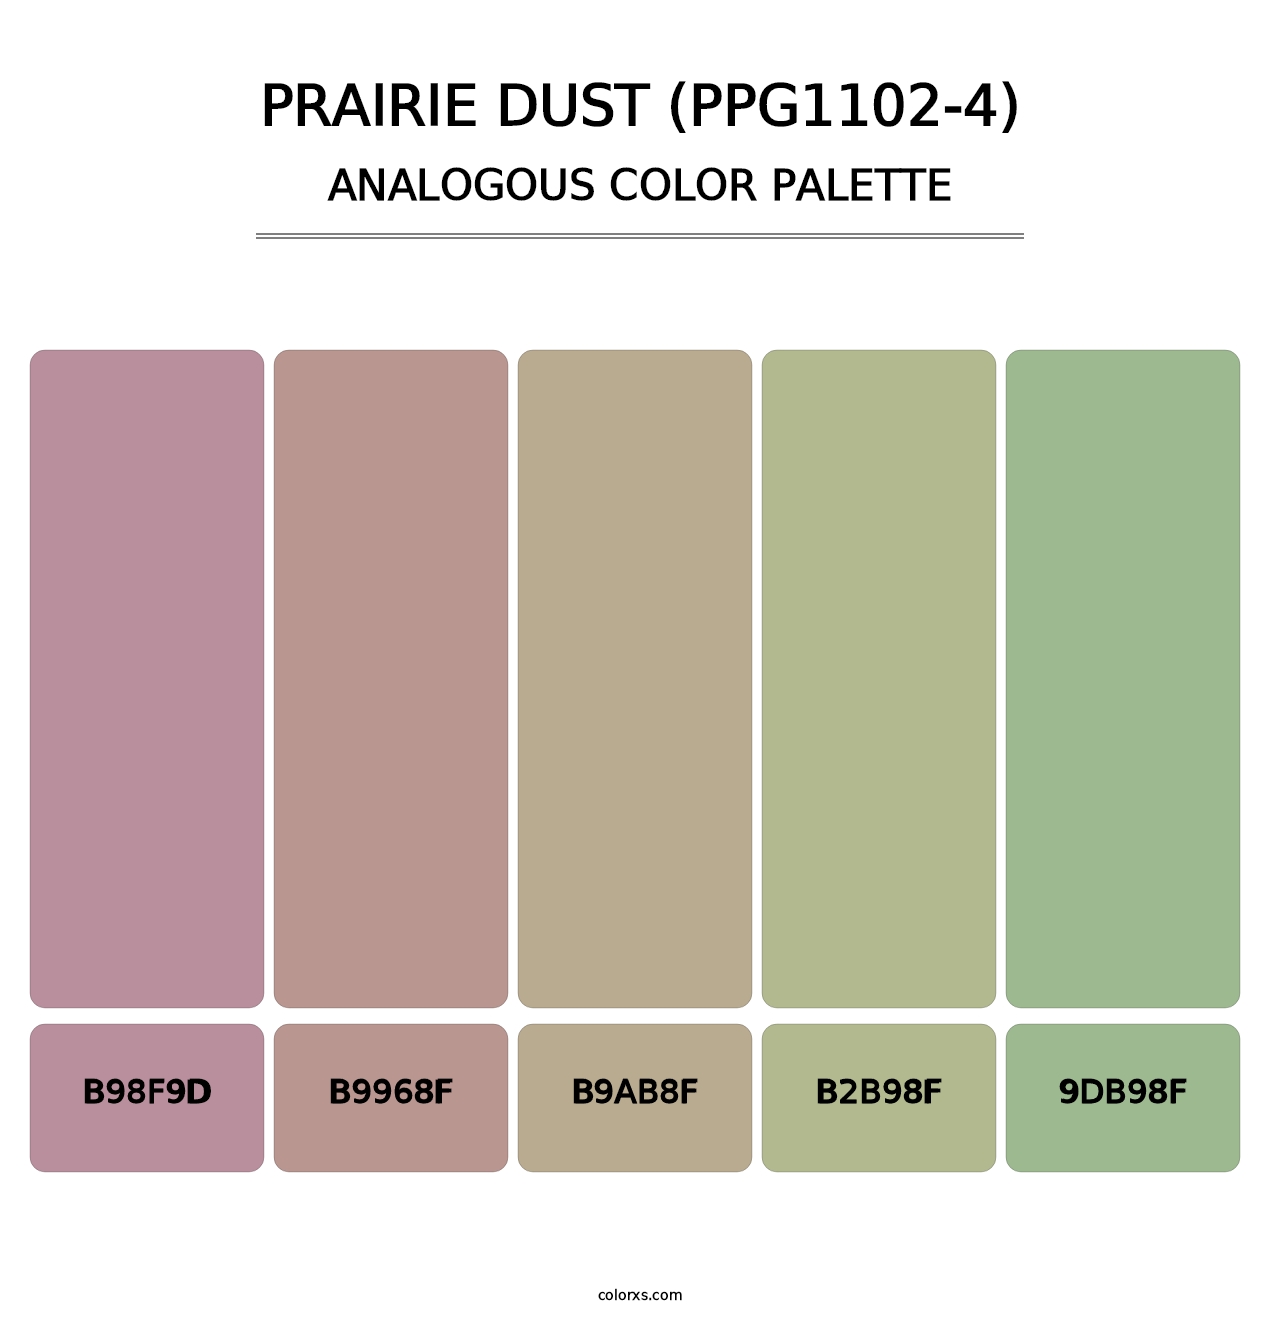 Prairie Dust (PPG1102-4) - Analogous Color Palette